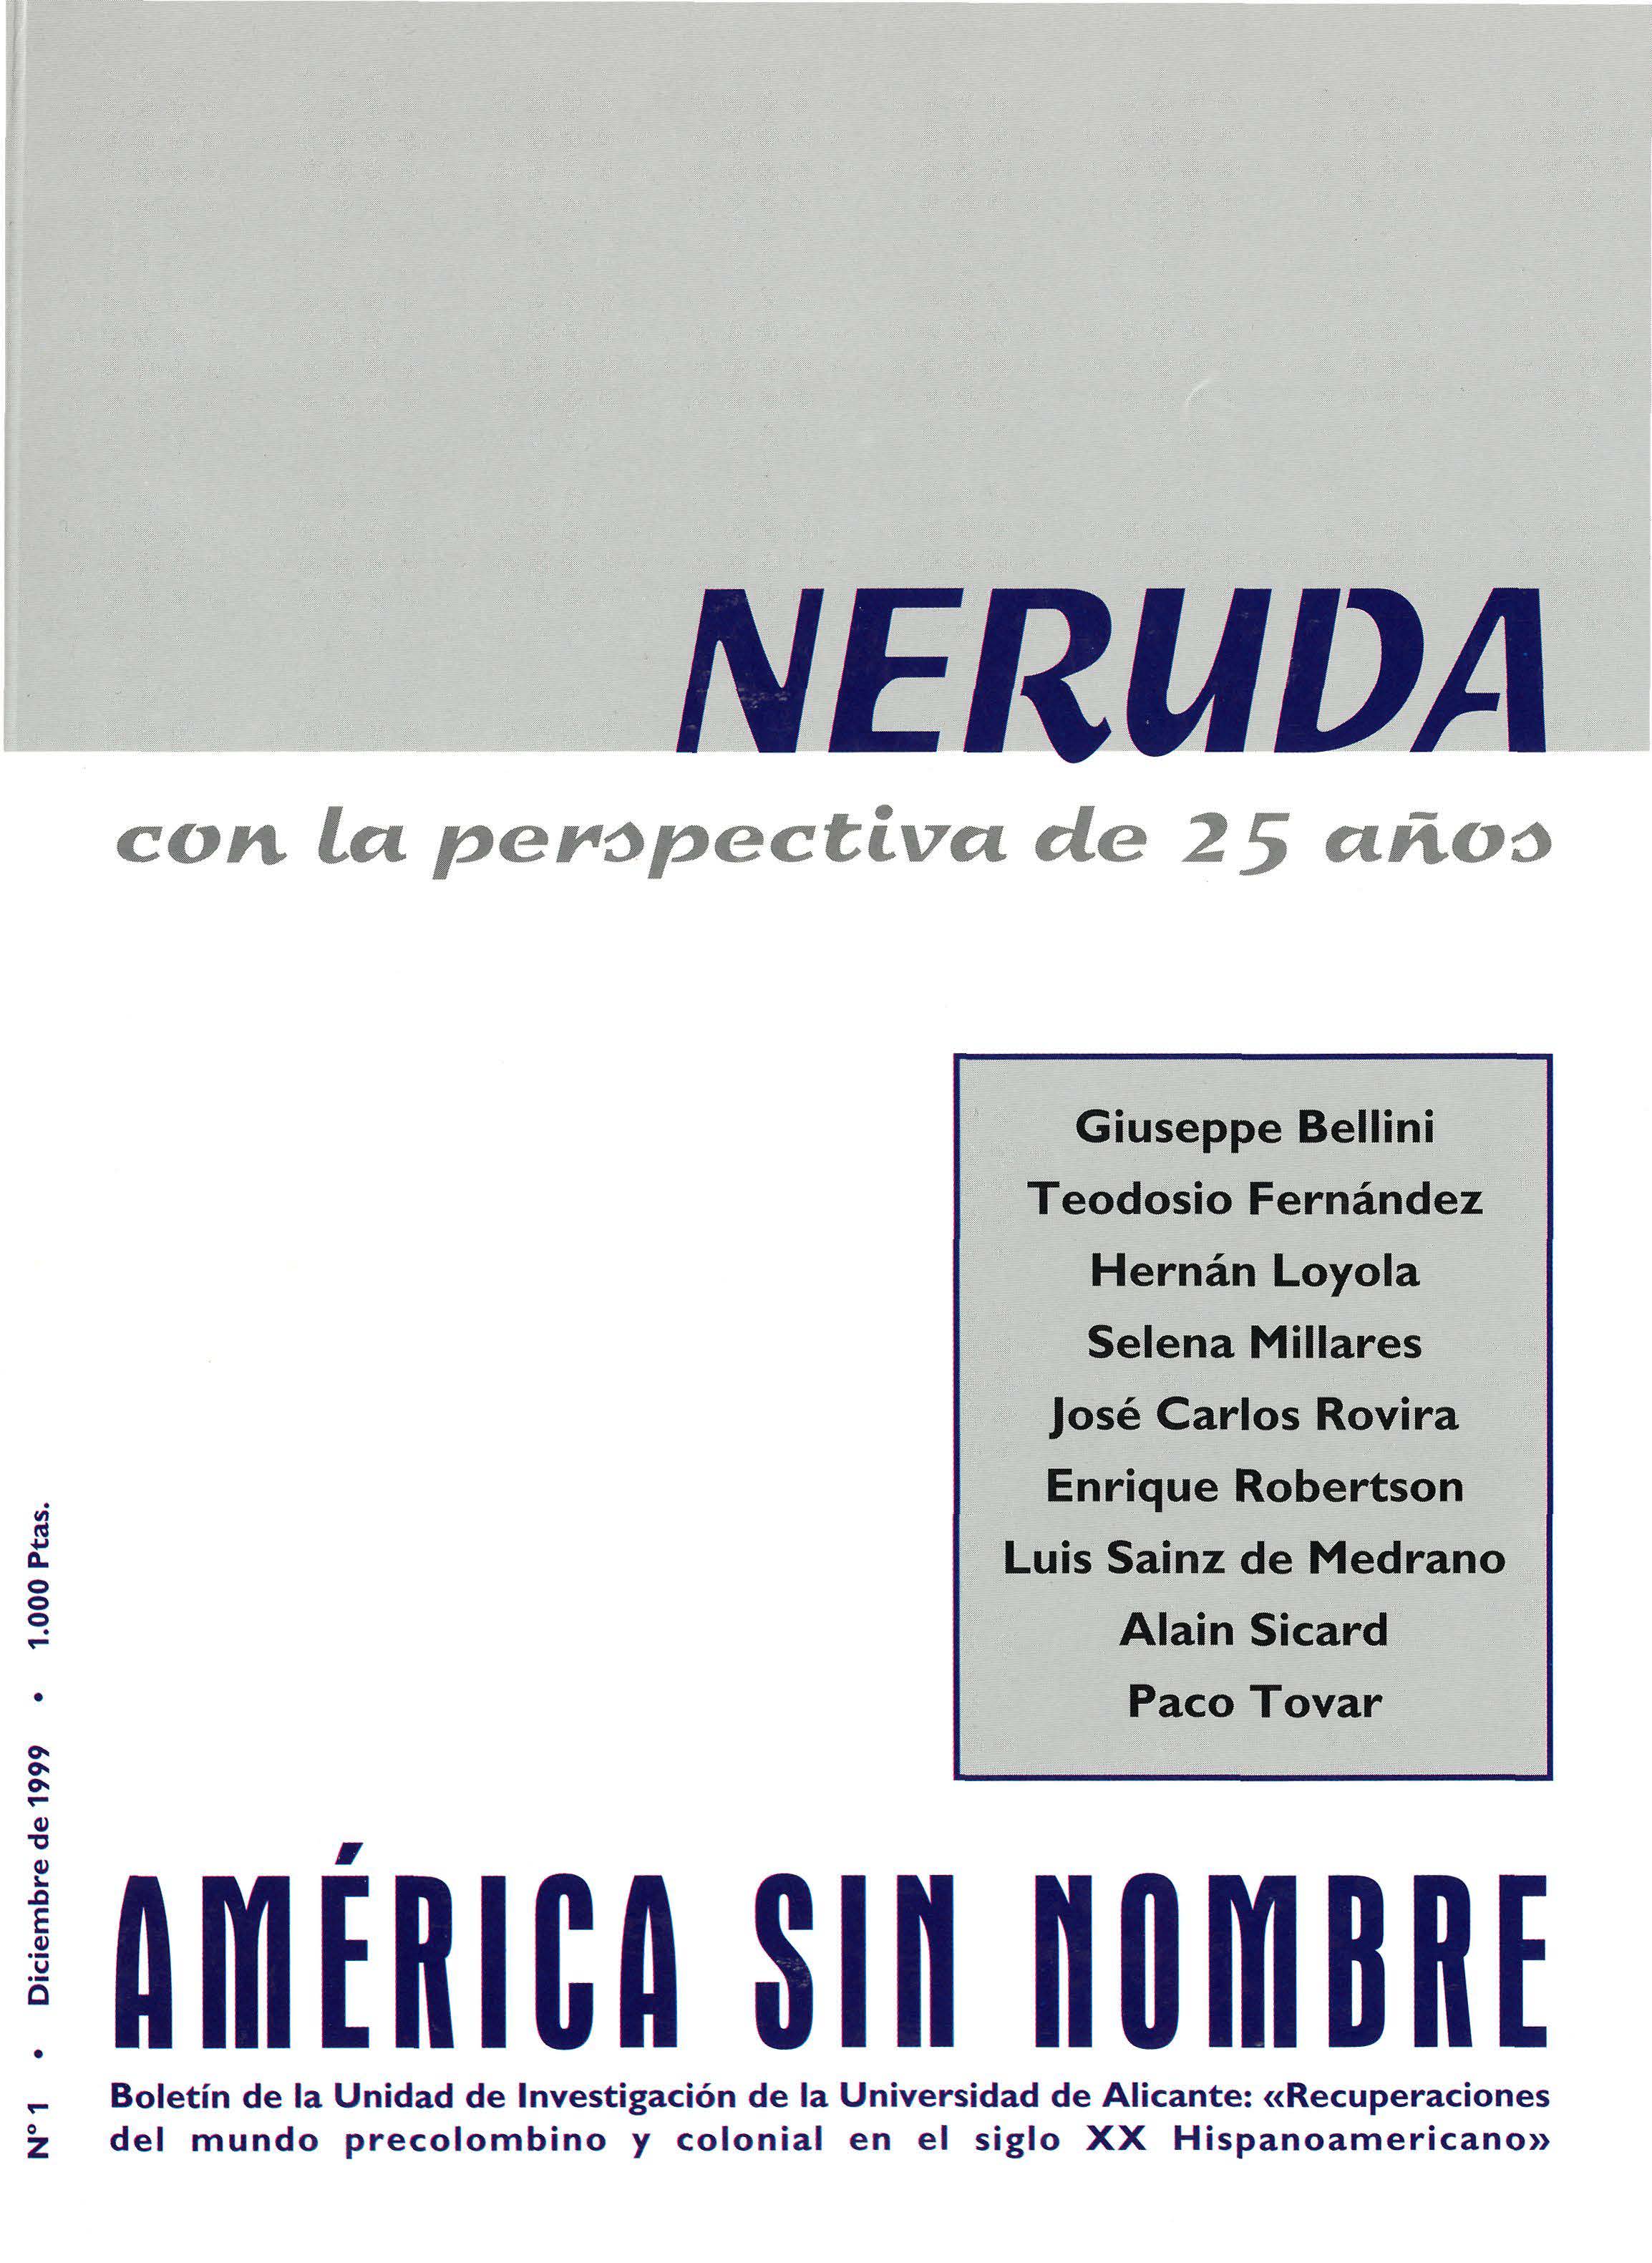 					Ver Núm. 1: Neruda con la perspectiva de 25 años
				